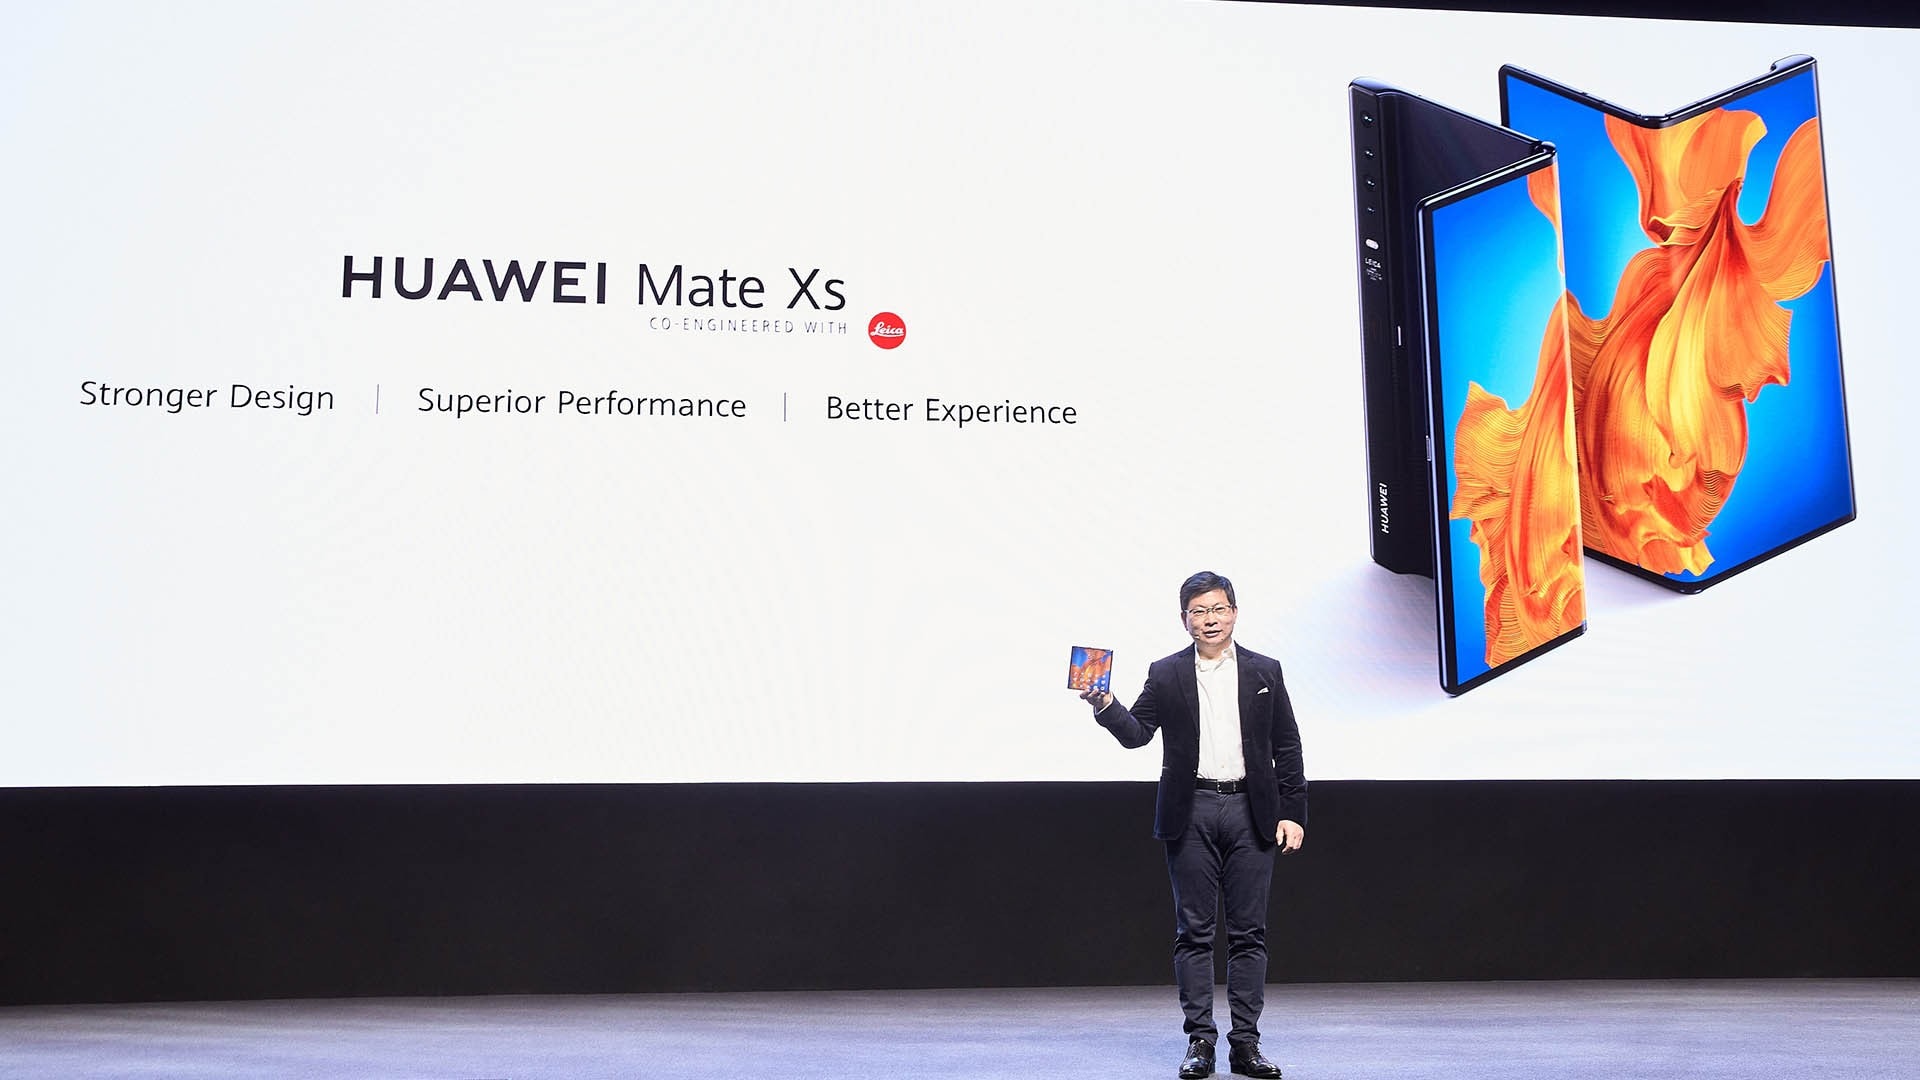 Huawei hizo importantes anuncios en Barcelona a pesar de la cancelación de #MWC2020